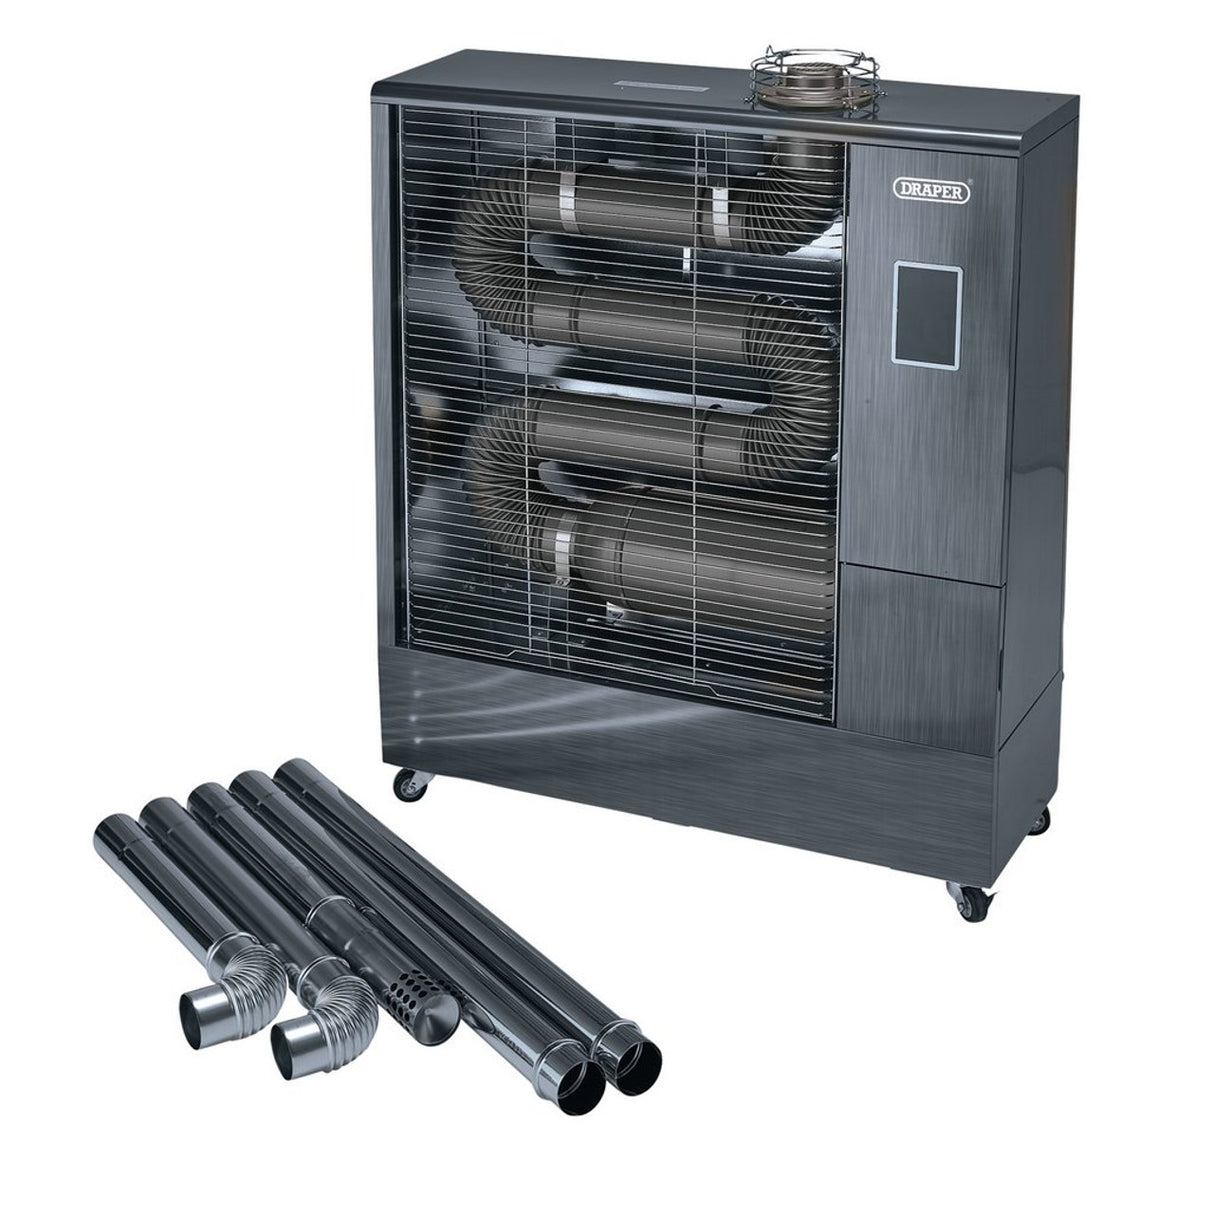 Draper Tools 230V Far Infrared Diesel Heater With Flue Kit, 51,500 Btu/15.1Kw